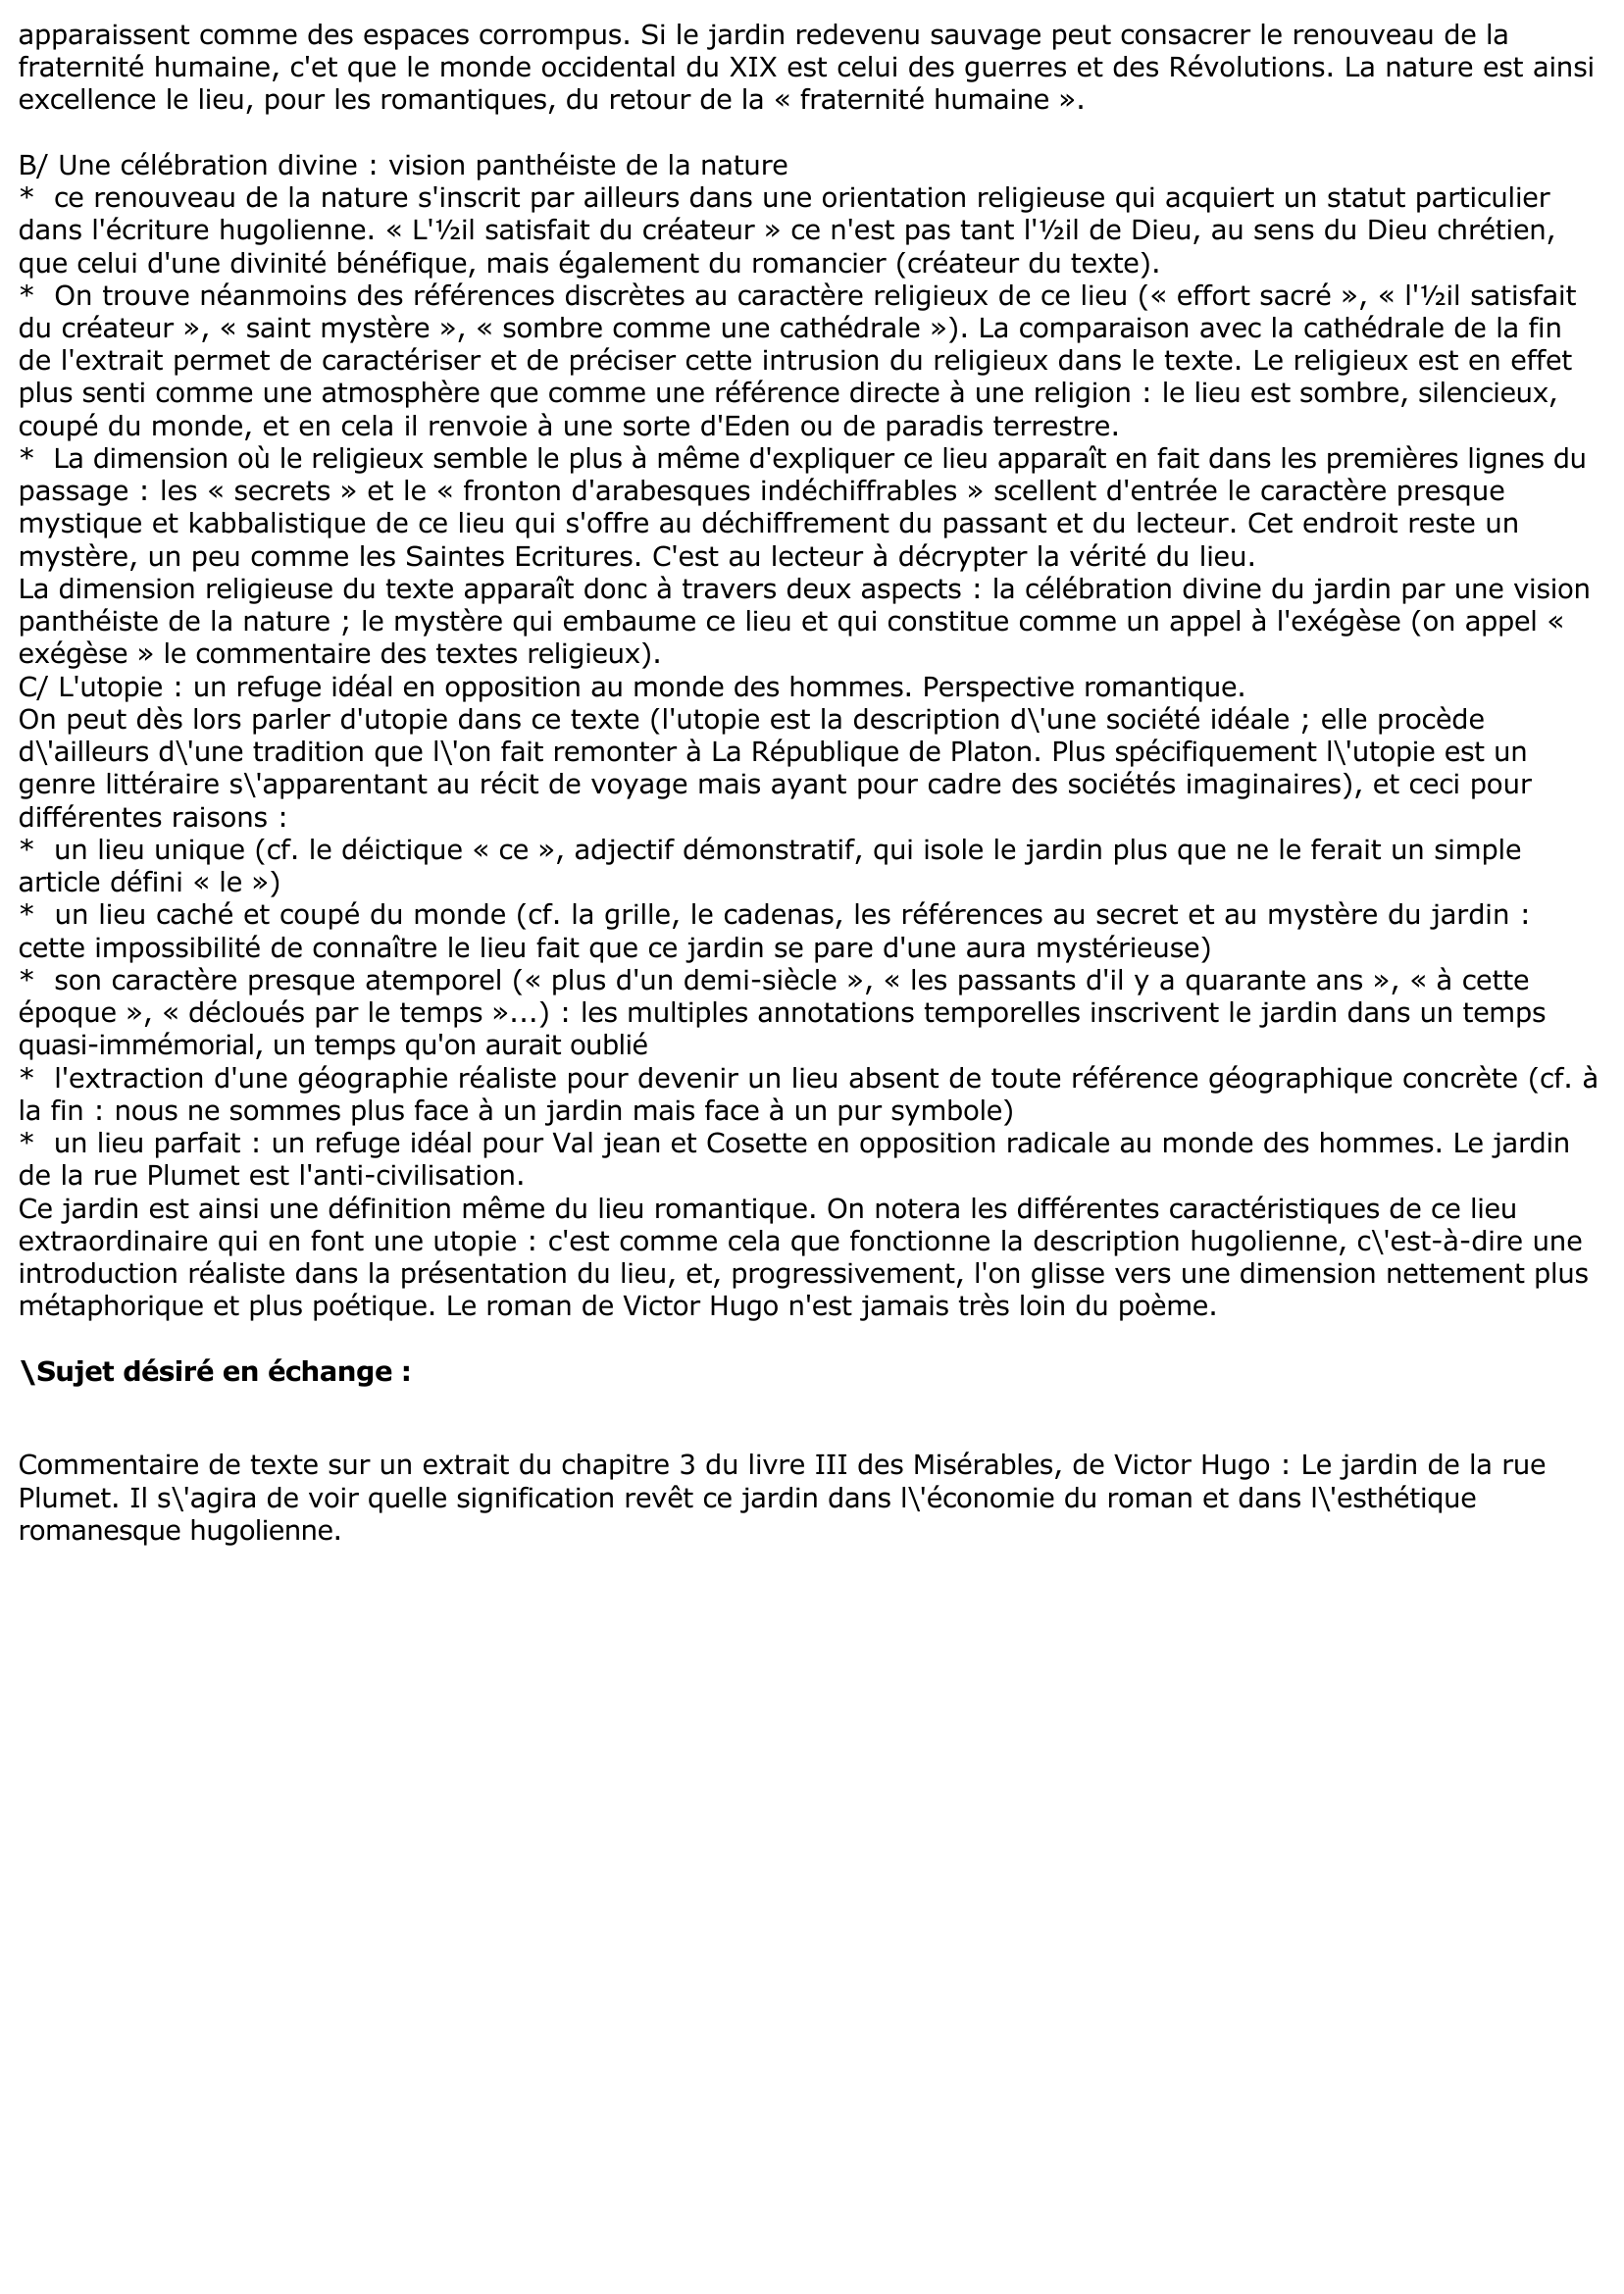 Prévisualisation du document Commentaire de texte sur la description du jardin de la rue Plumet (Les Misérables, Victor Hugo).